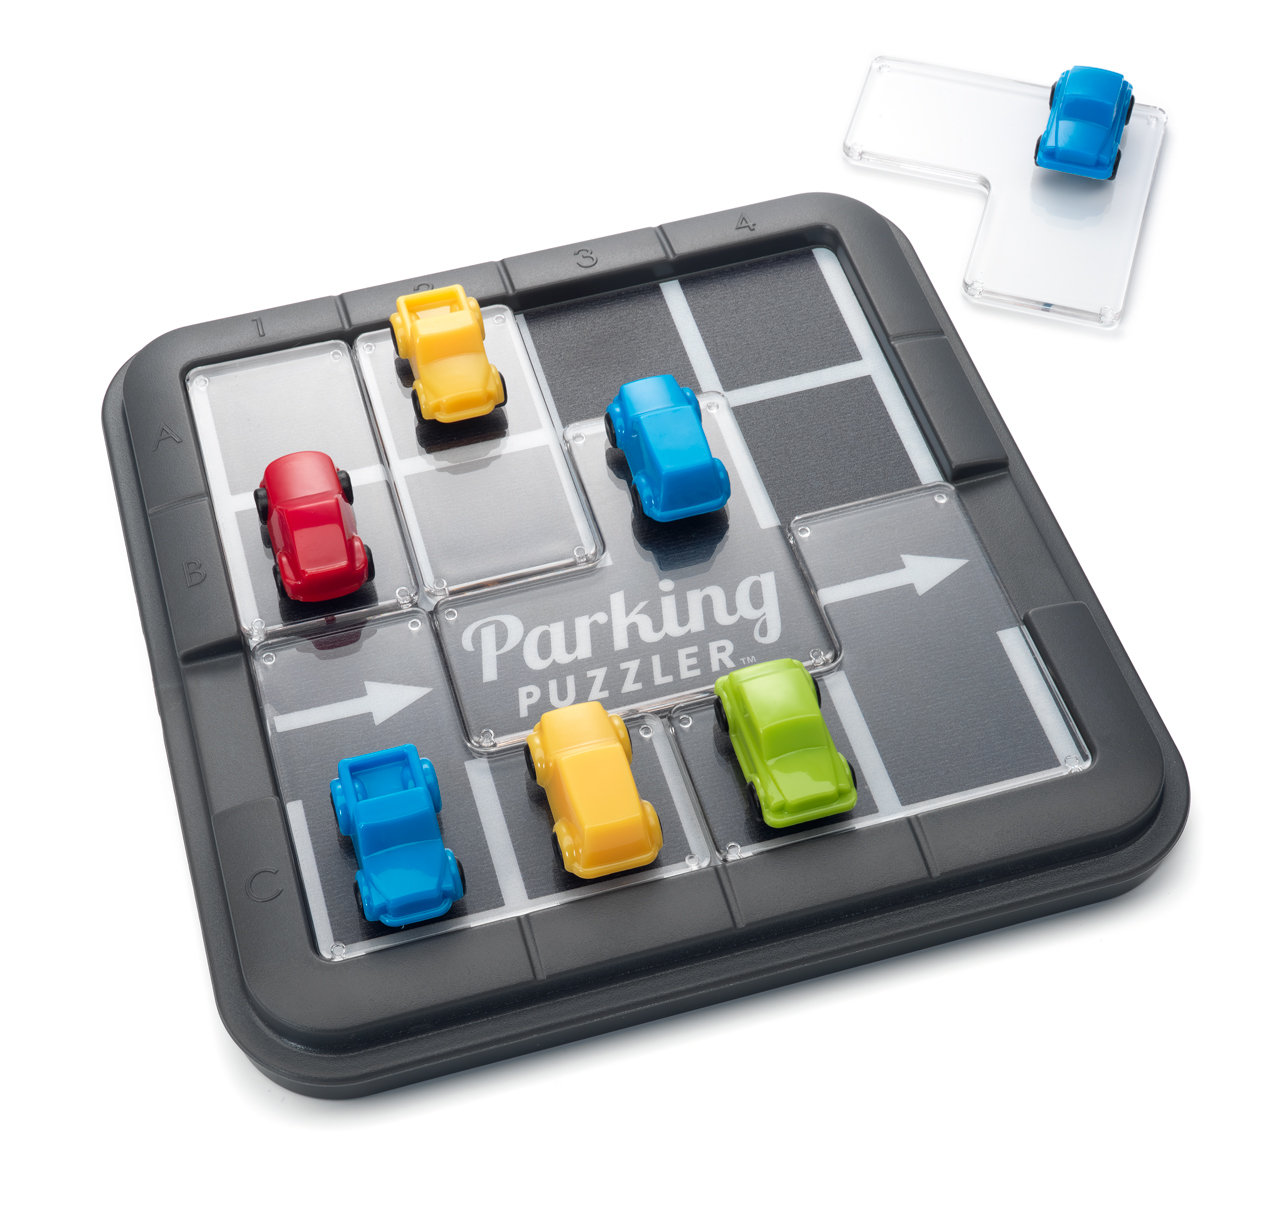 Puzzle Puzzler Parking SMART GAMES